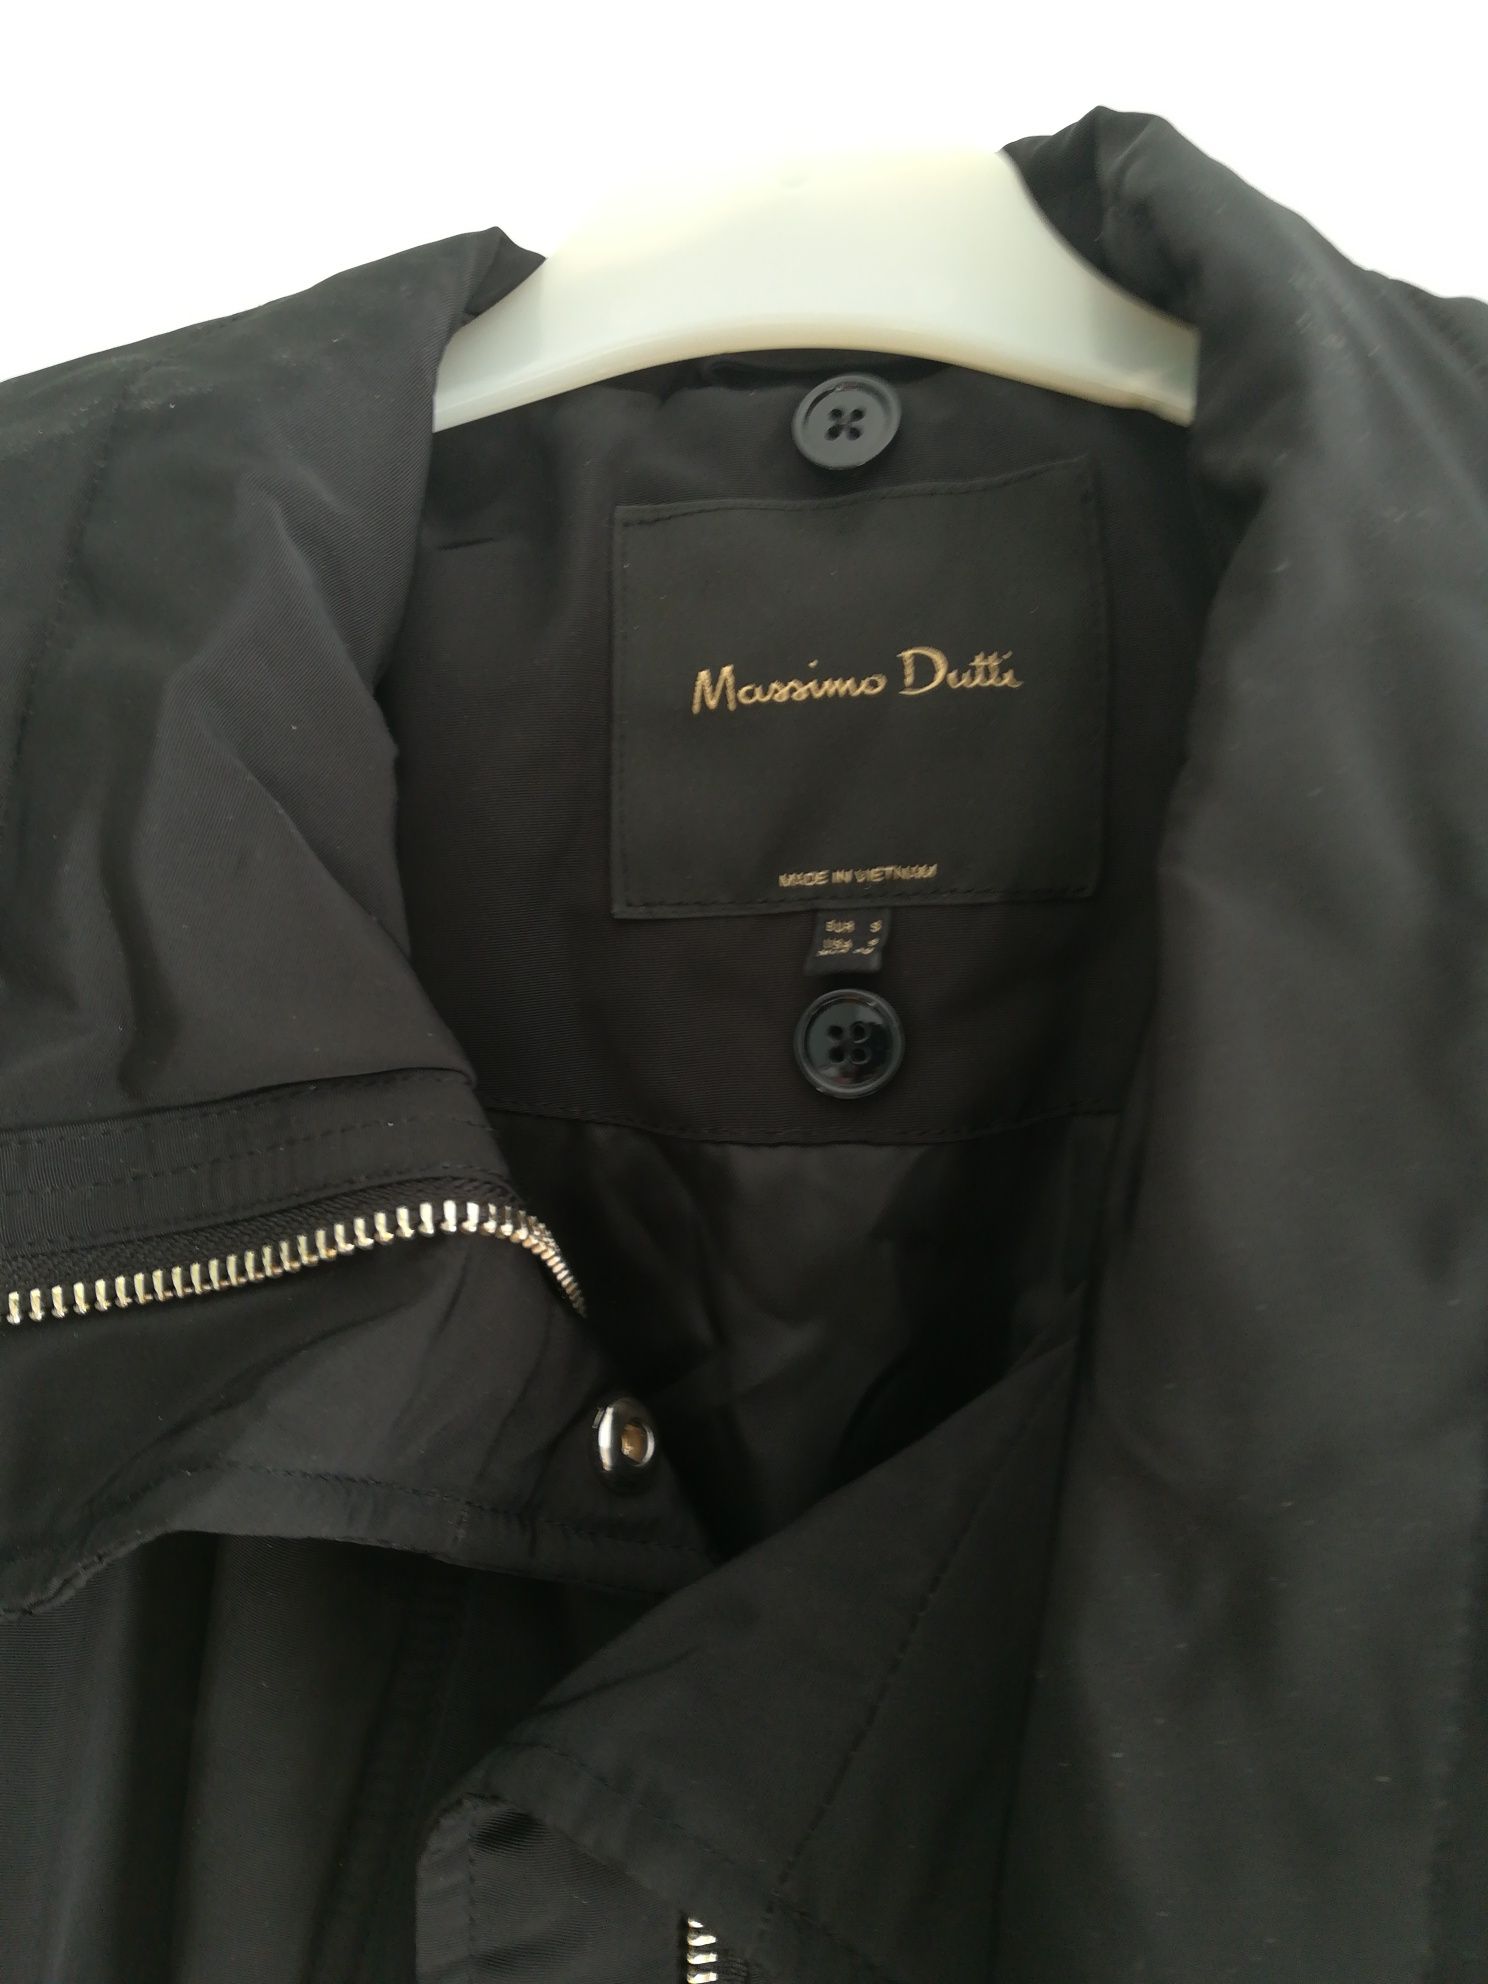 haina extralarge, mărimea S, Massimo Dutti